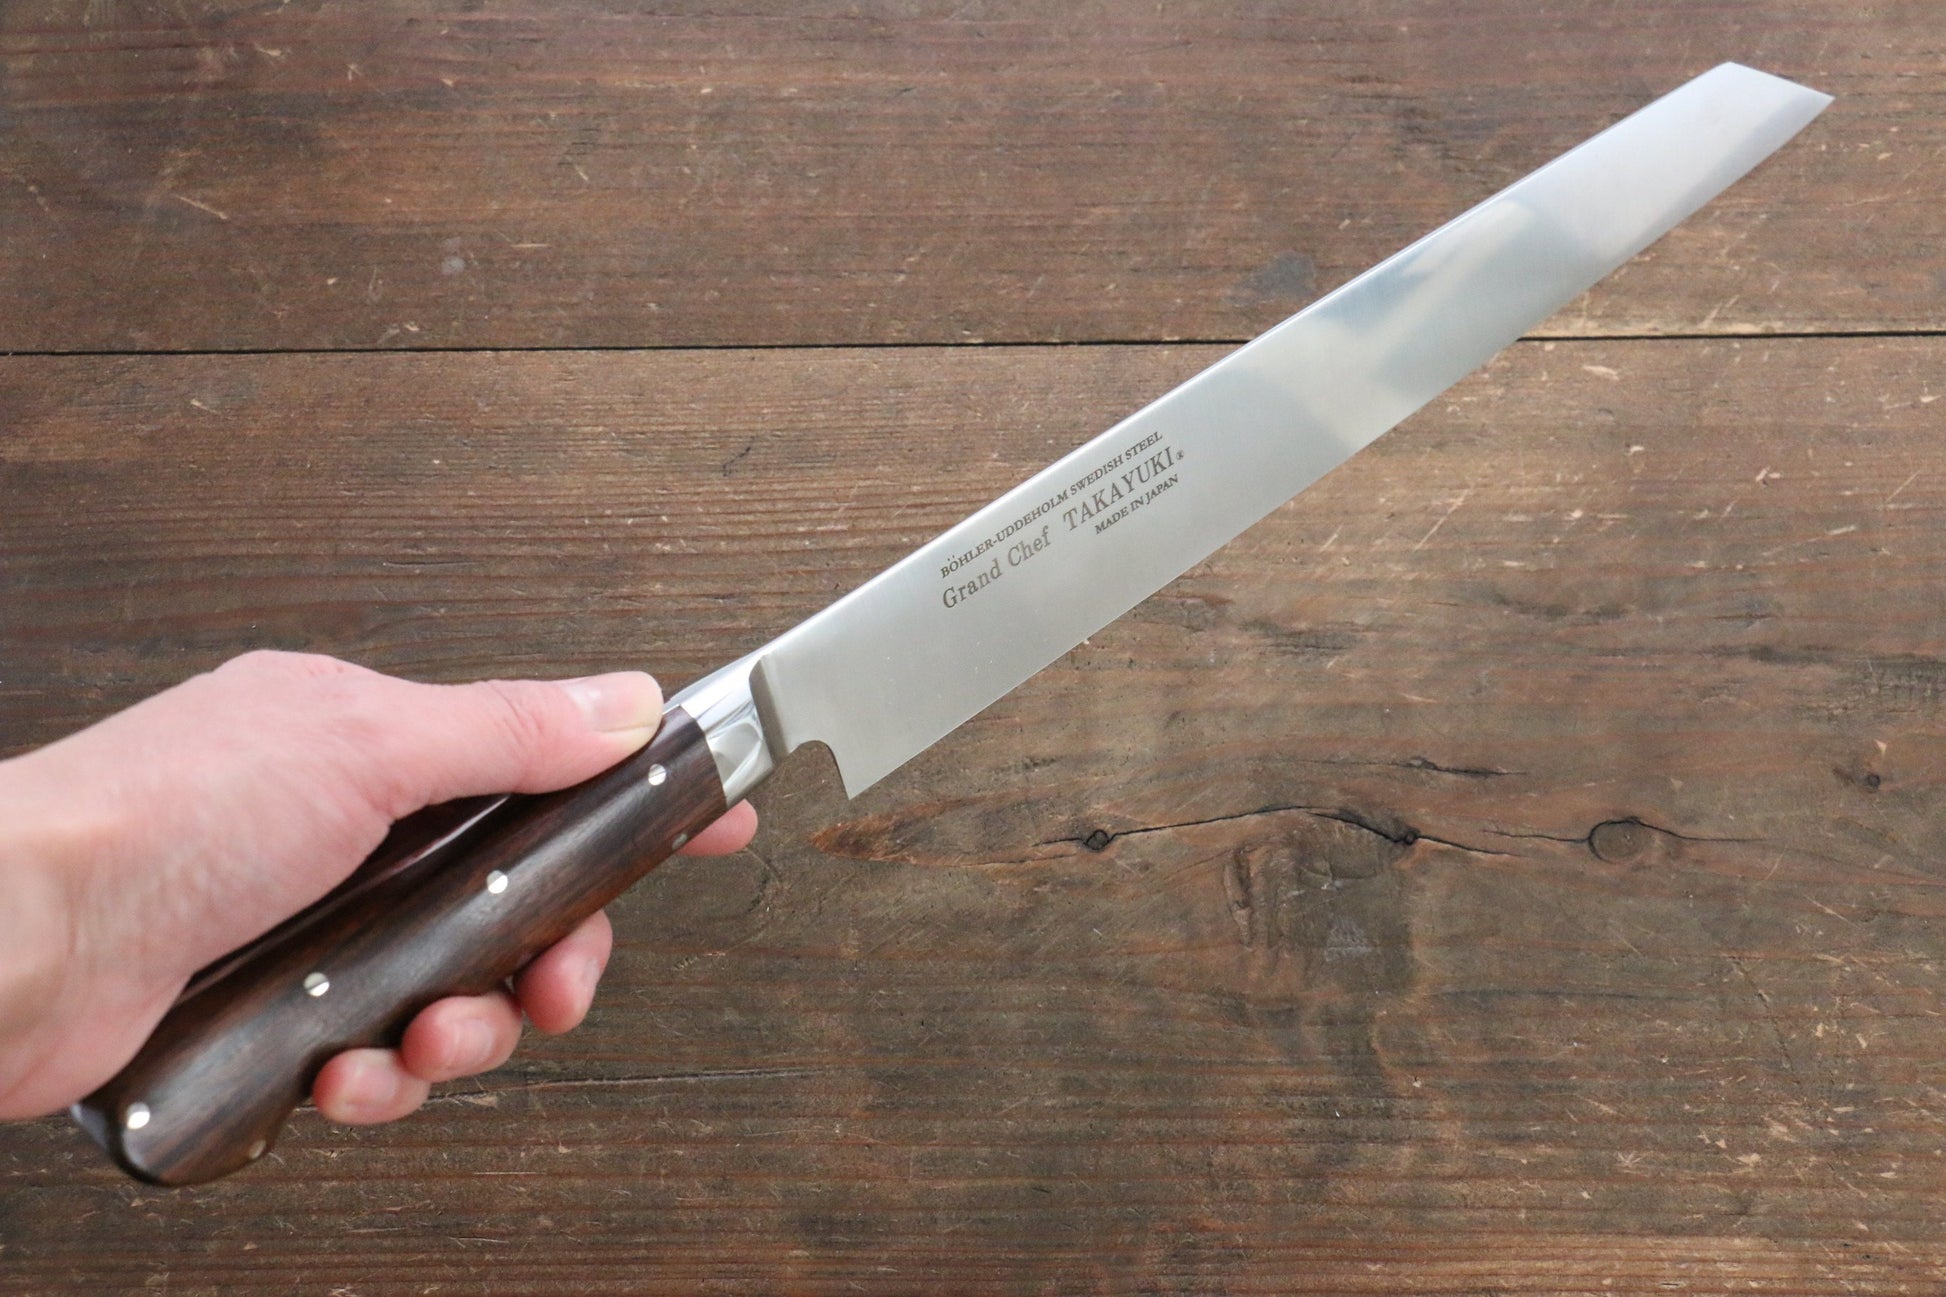 [Left Handed] Sakai Takayuki Grand Chef Japanese Sword Style Sushi Chef Knife - Japanny - Best Japanese Knife